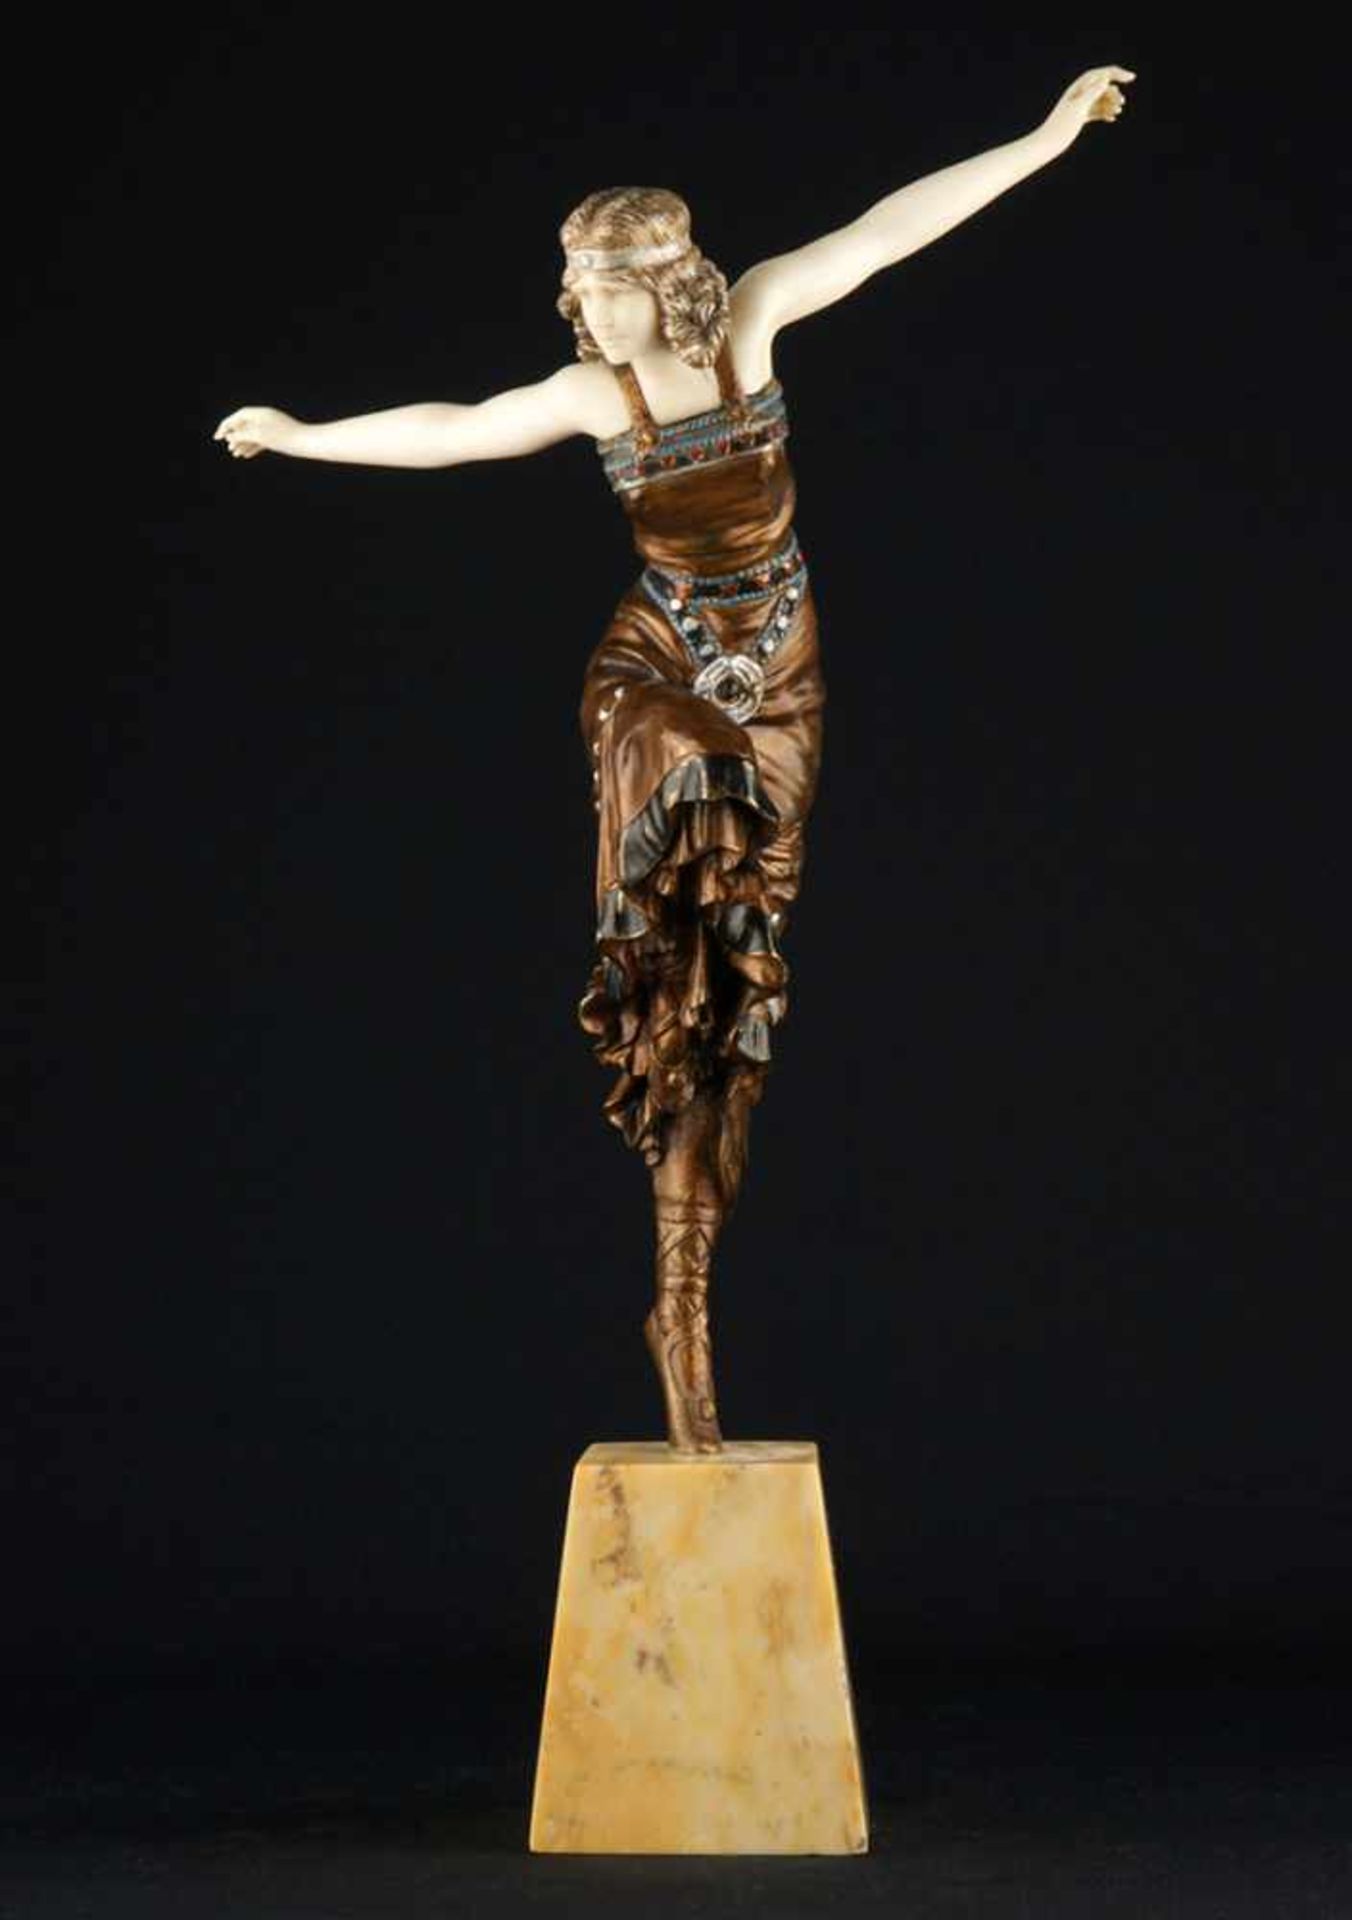 PHILIPPE, PAUL (1870 Thorn - 1930 Paris)."Russian Dancer". Um 1925 (Entwurf). Elfenbein